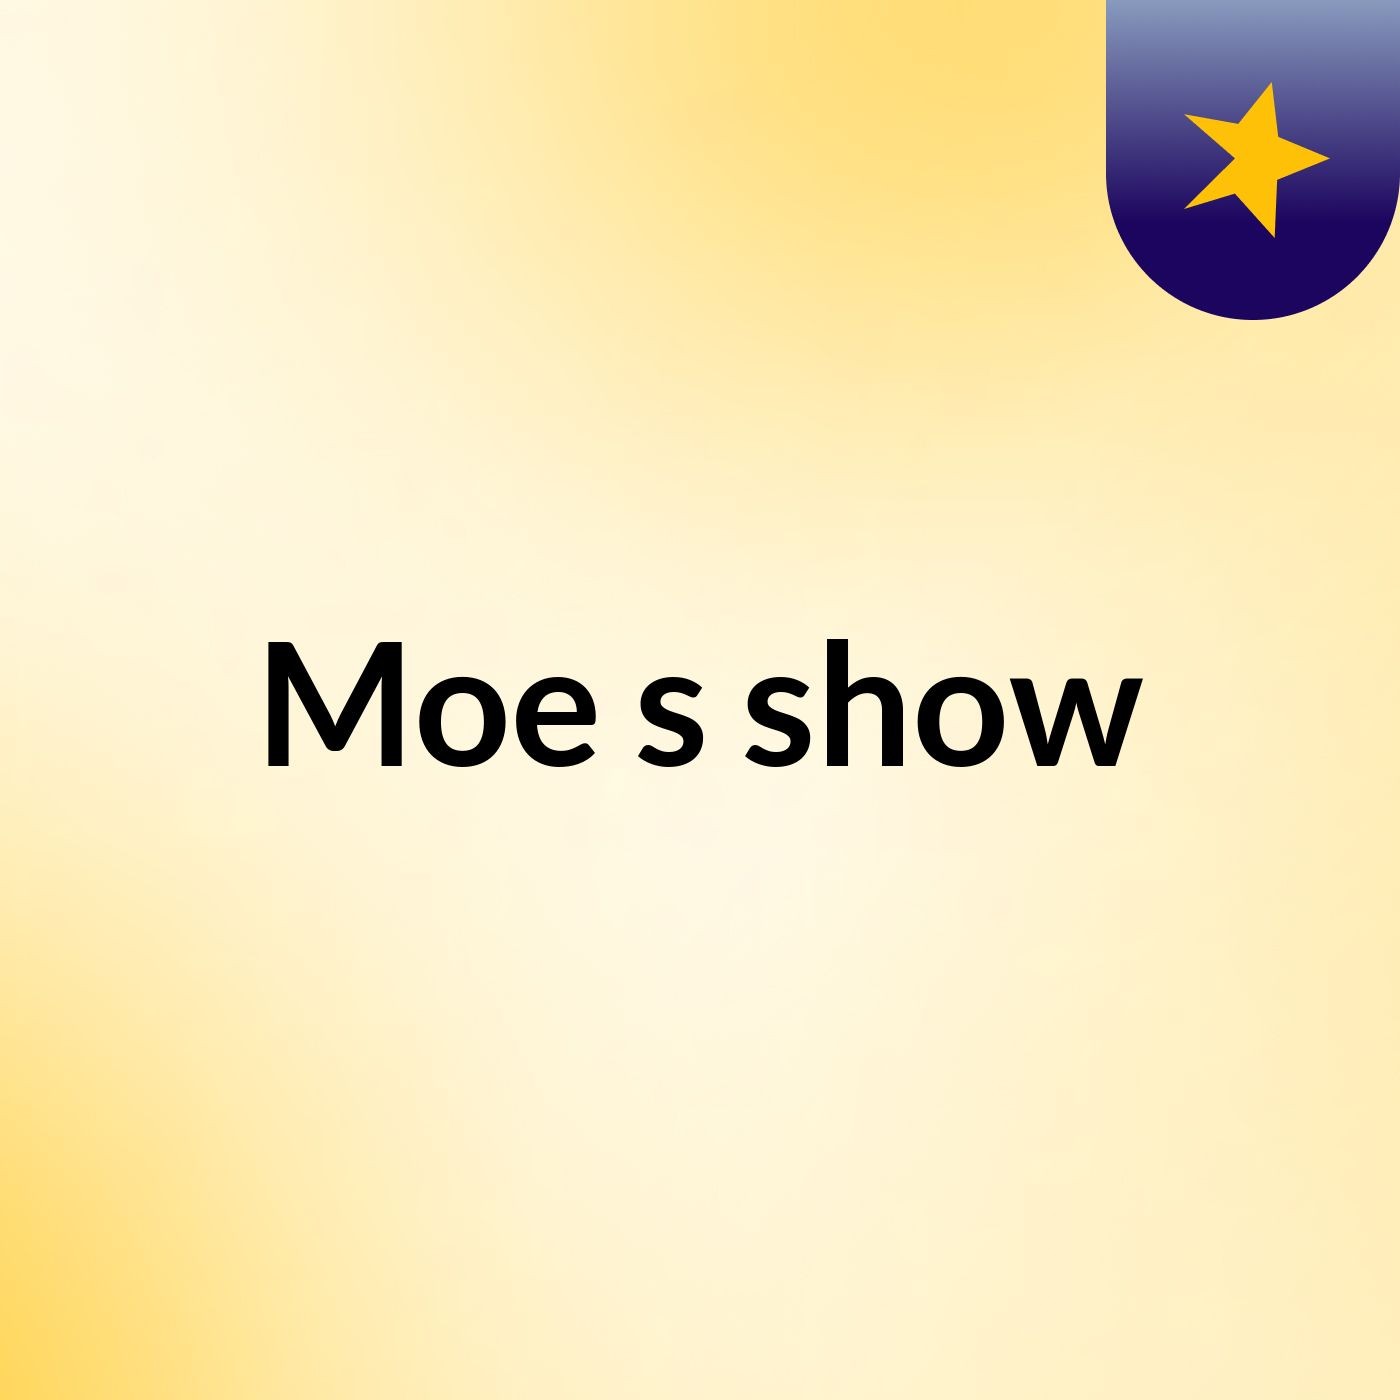 Moe's show